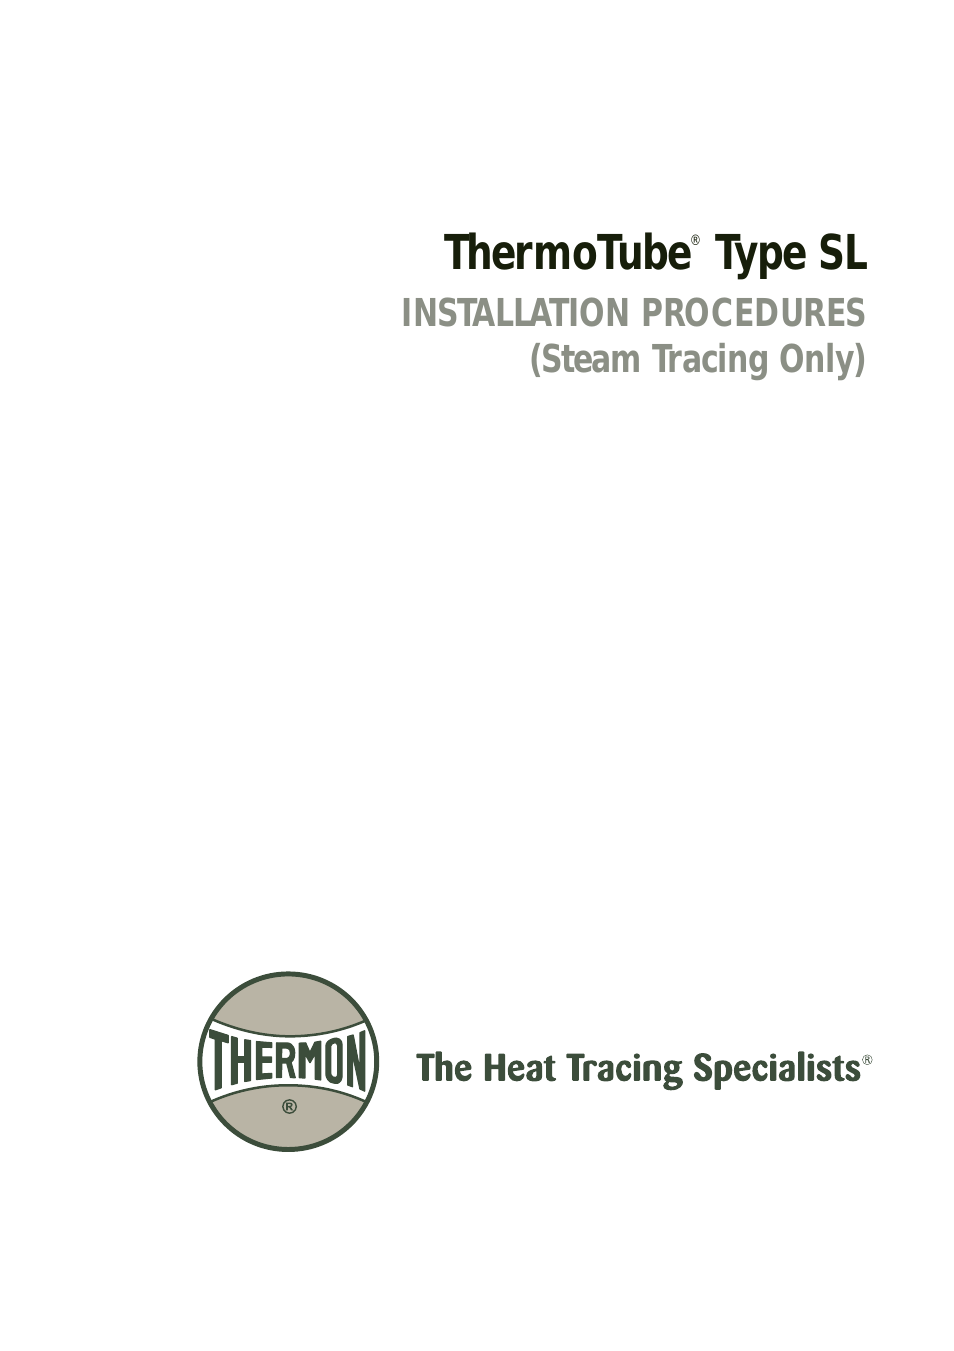 ThermoTube Type SL